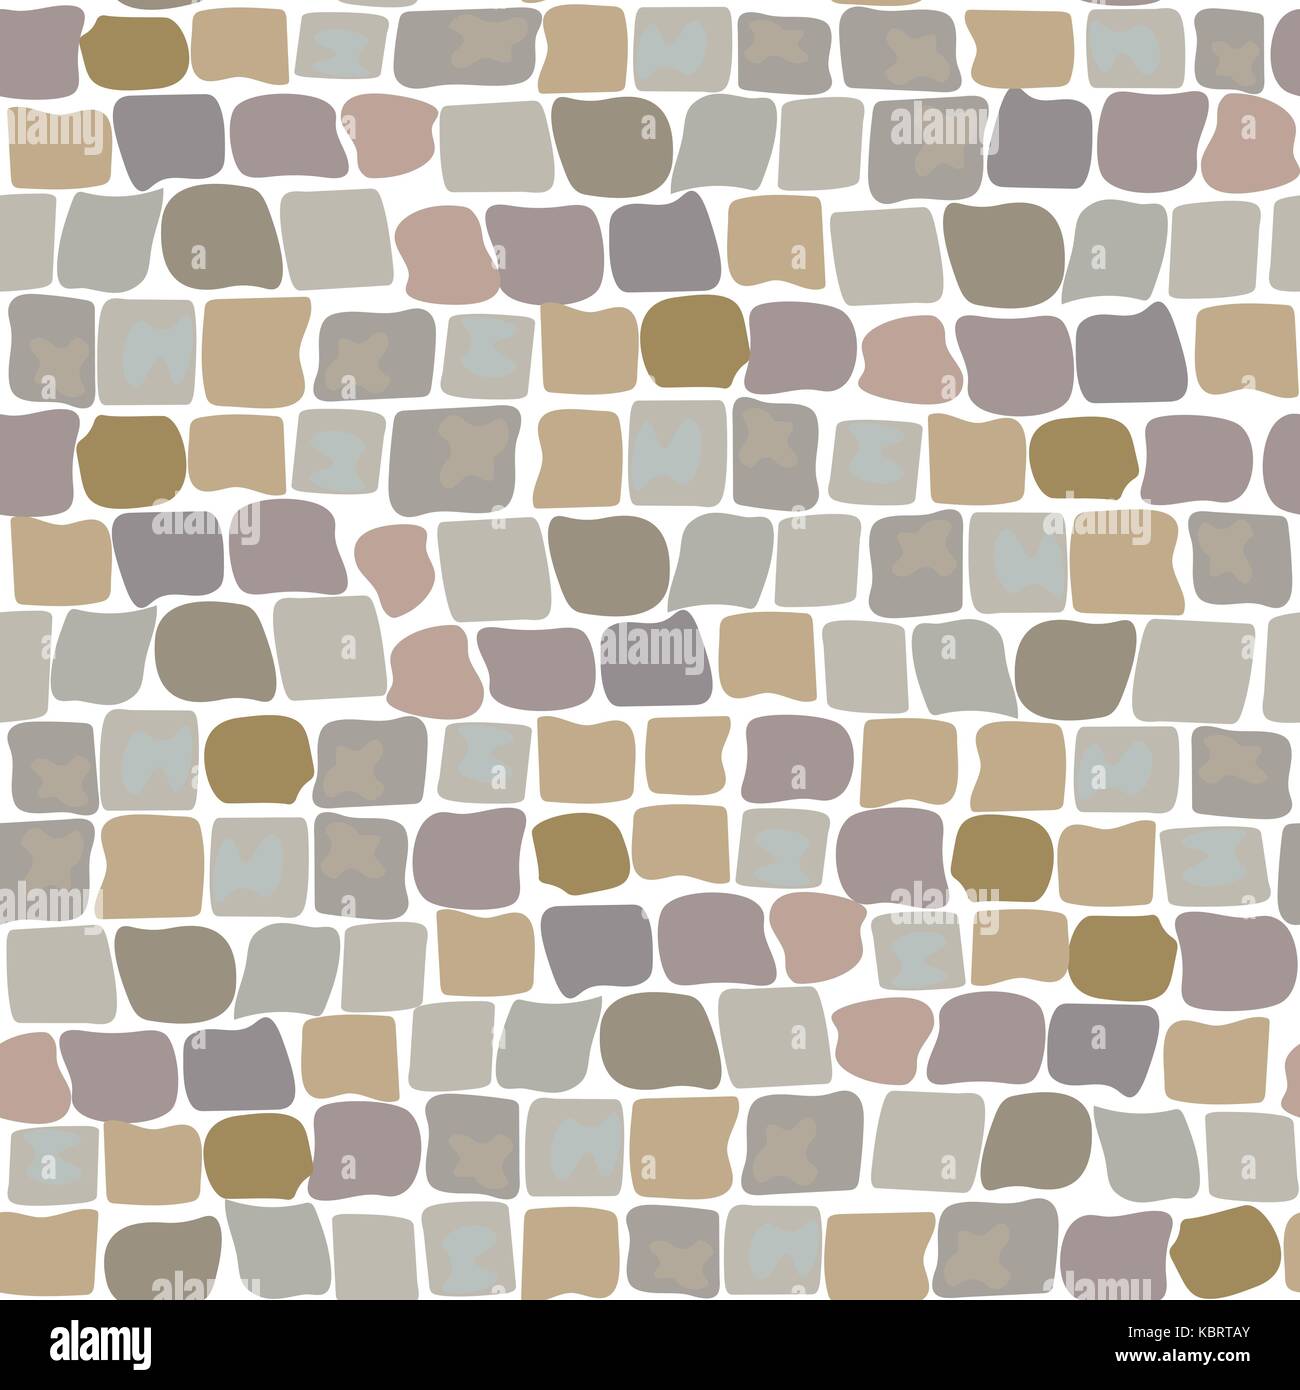 La texture de la route pavés motif transparent. mur de pierre, la rue pavée Illustration de Vecteur